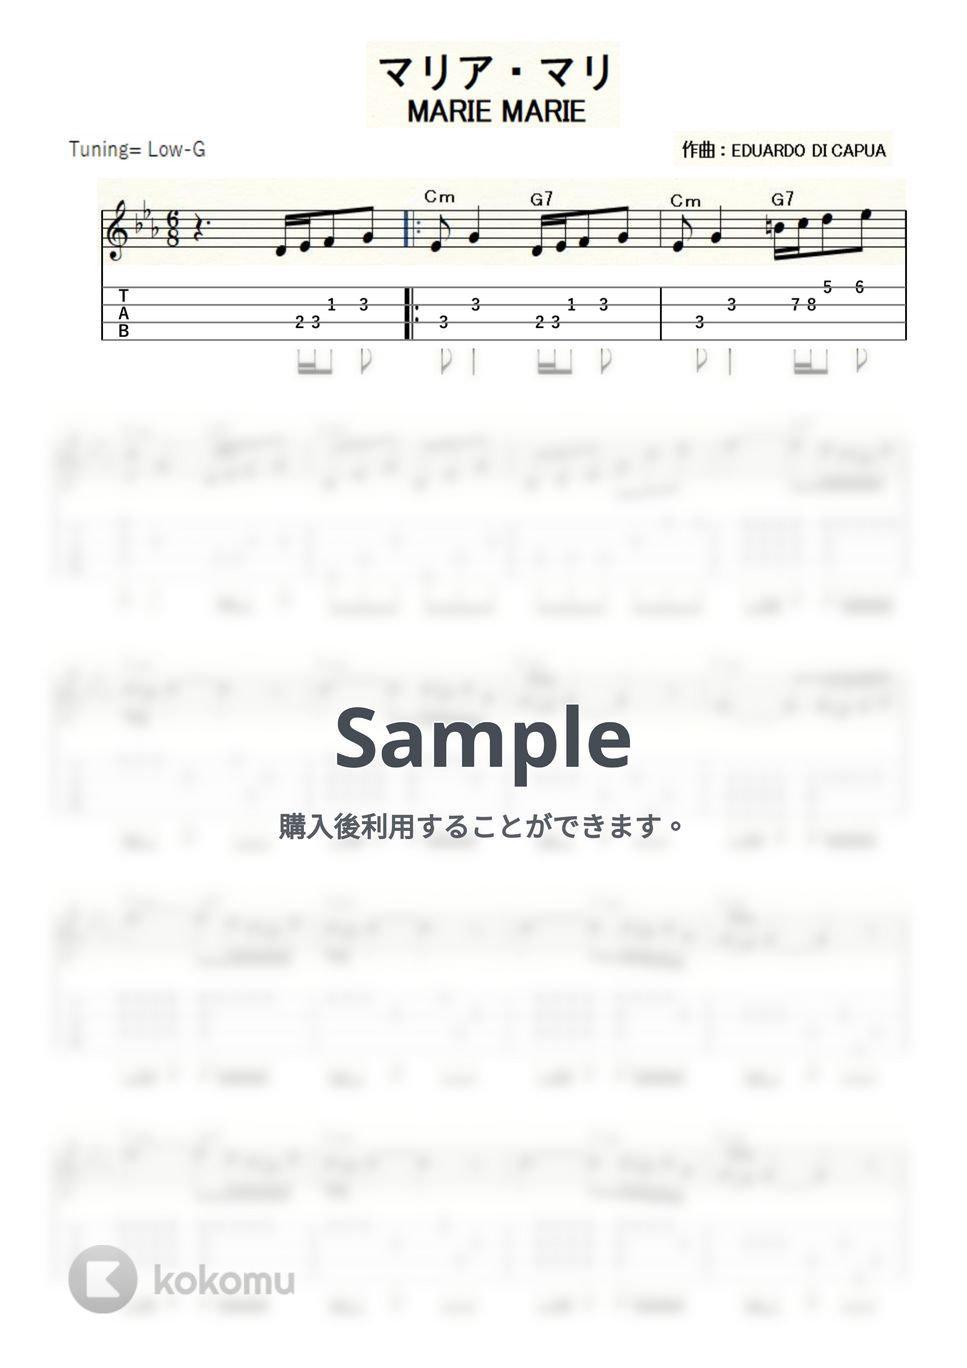 エデュアルド・ディ・カプア - マリア・マリ (ｳｸﾚﾚｿﾛ/Low-G/中級) by ukulelepapa